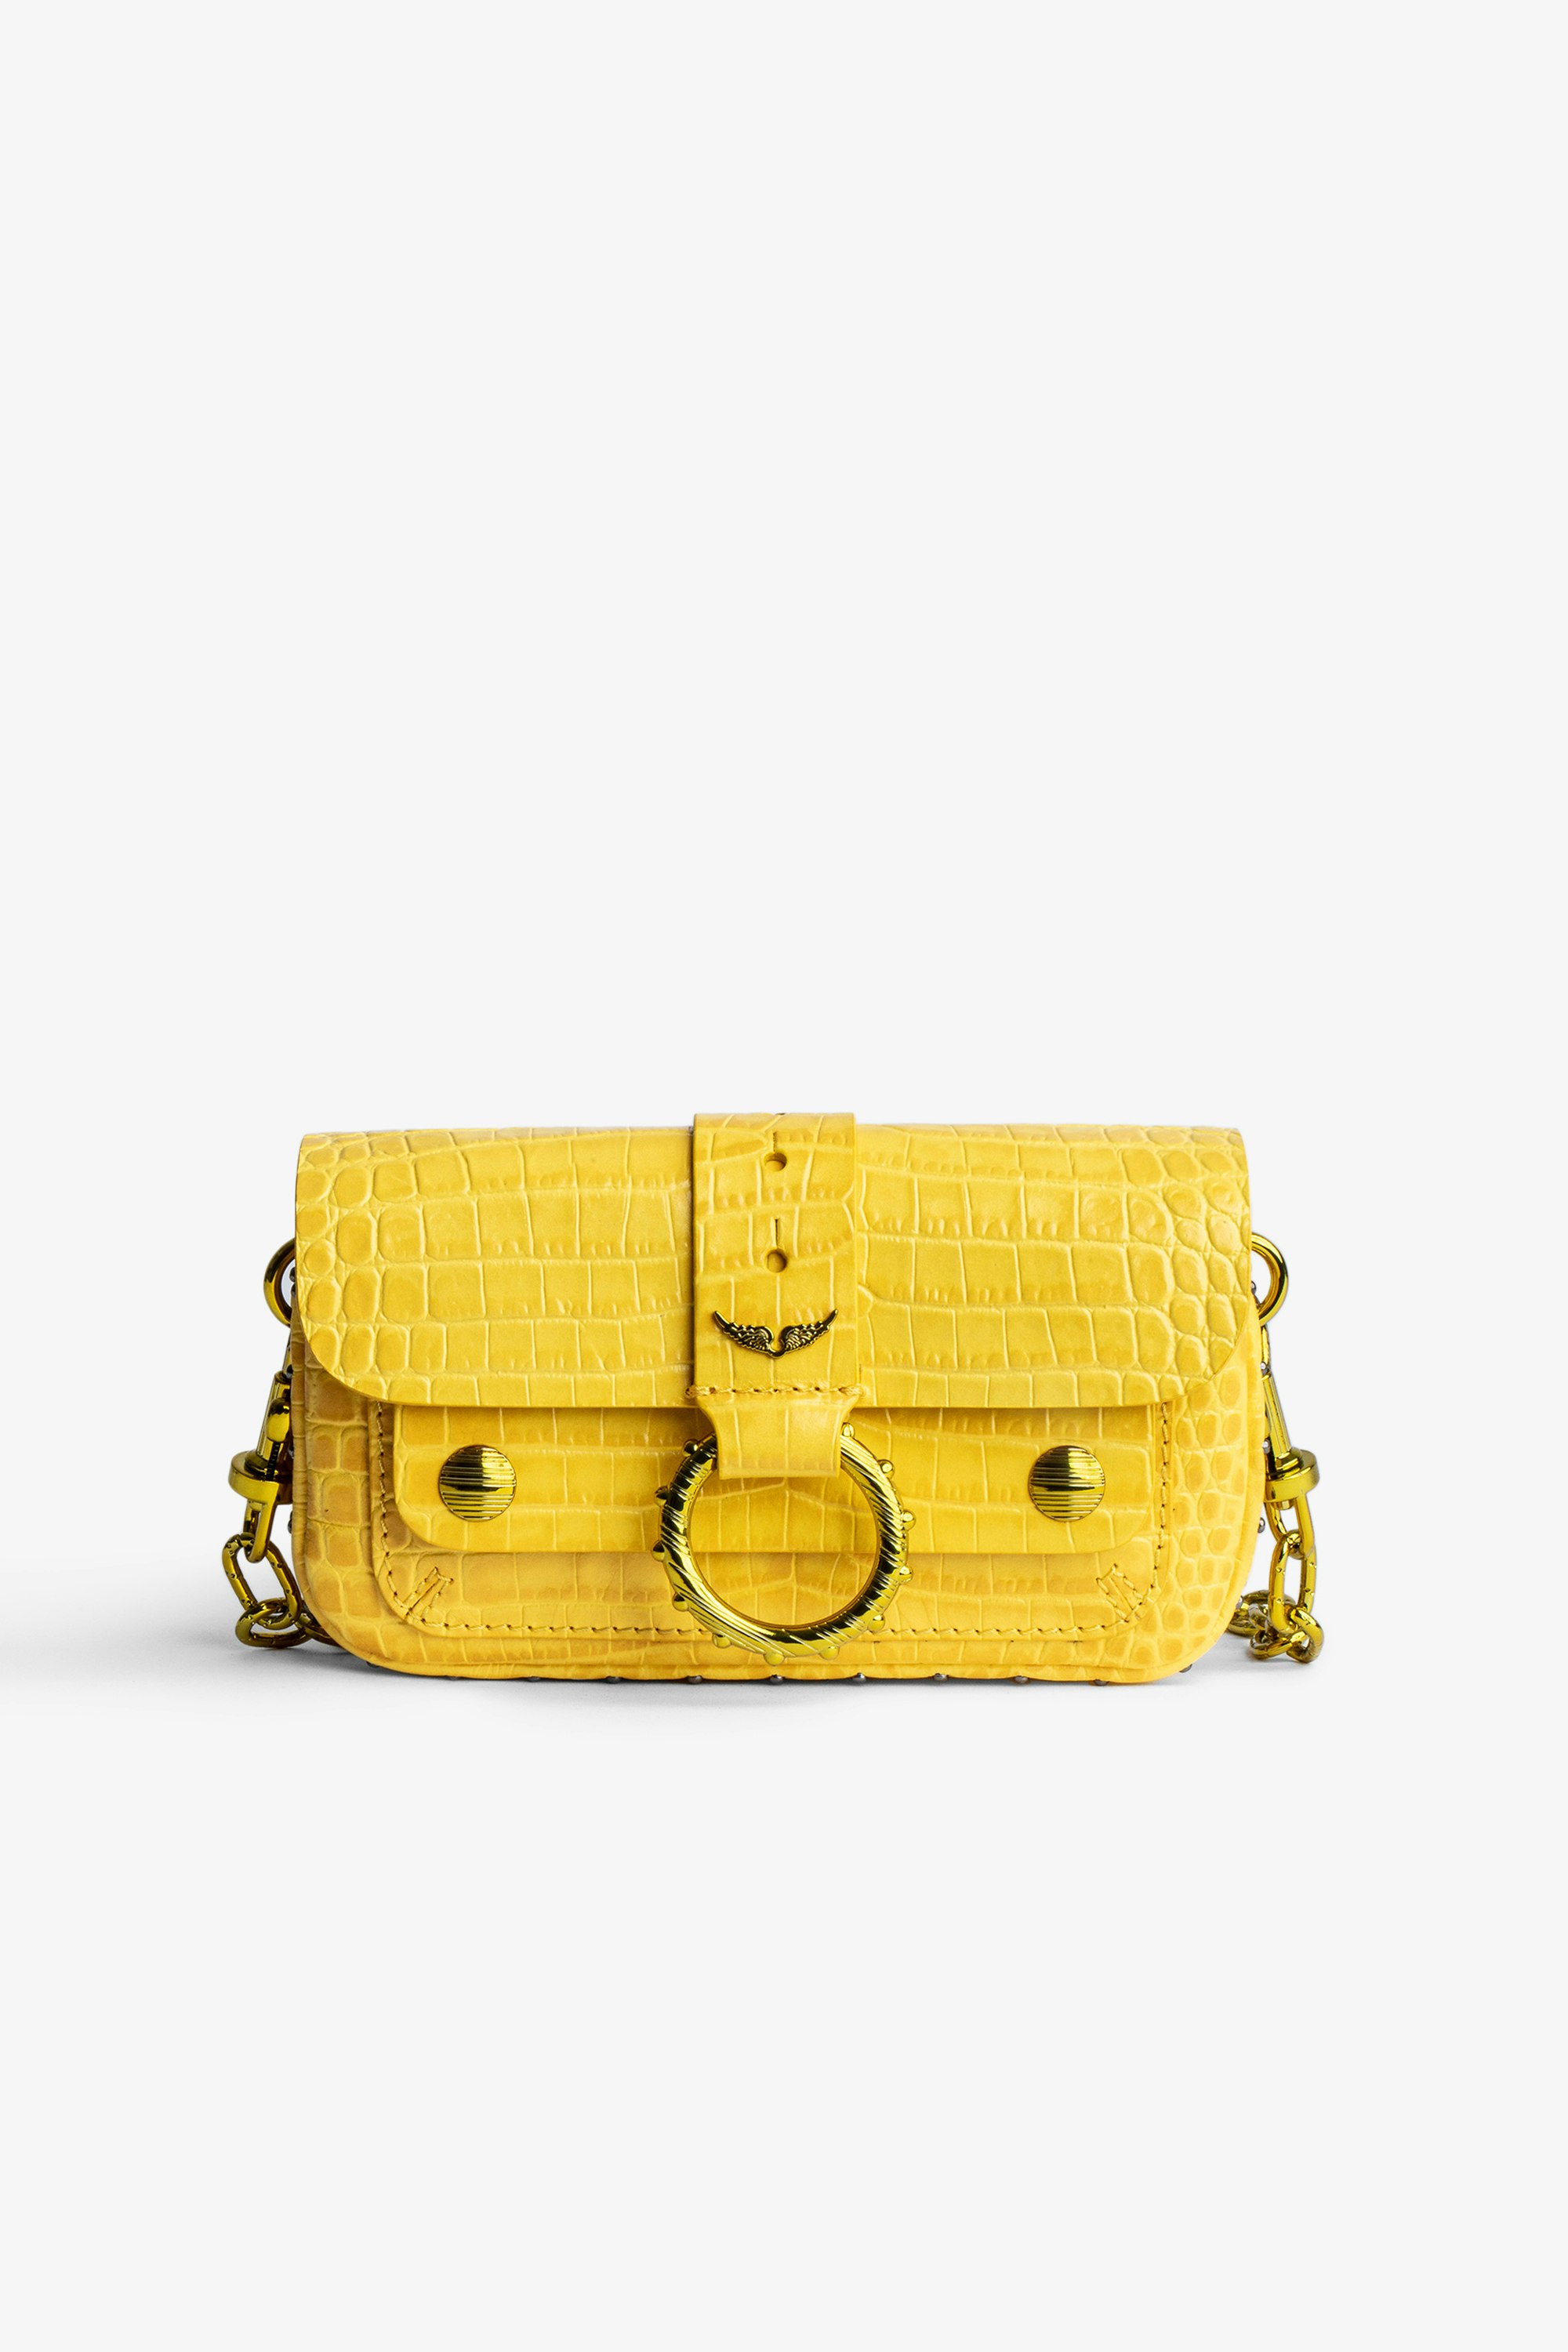 Kate Wallet Croc-Embossed バッグ Women’s yellow Kate Wallet croc-embossed bag